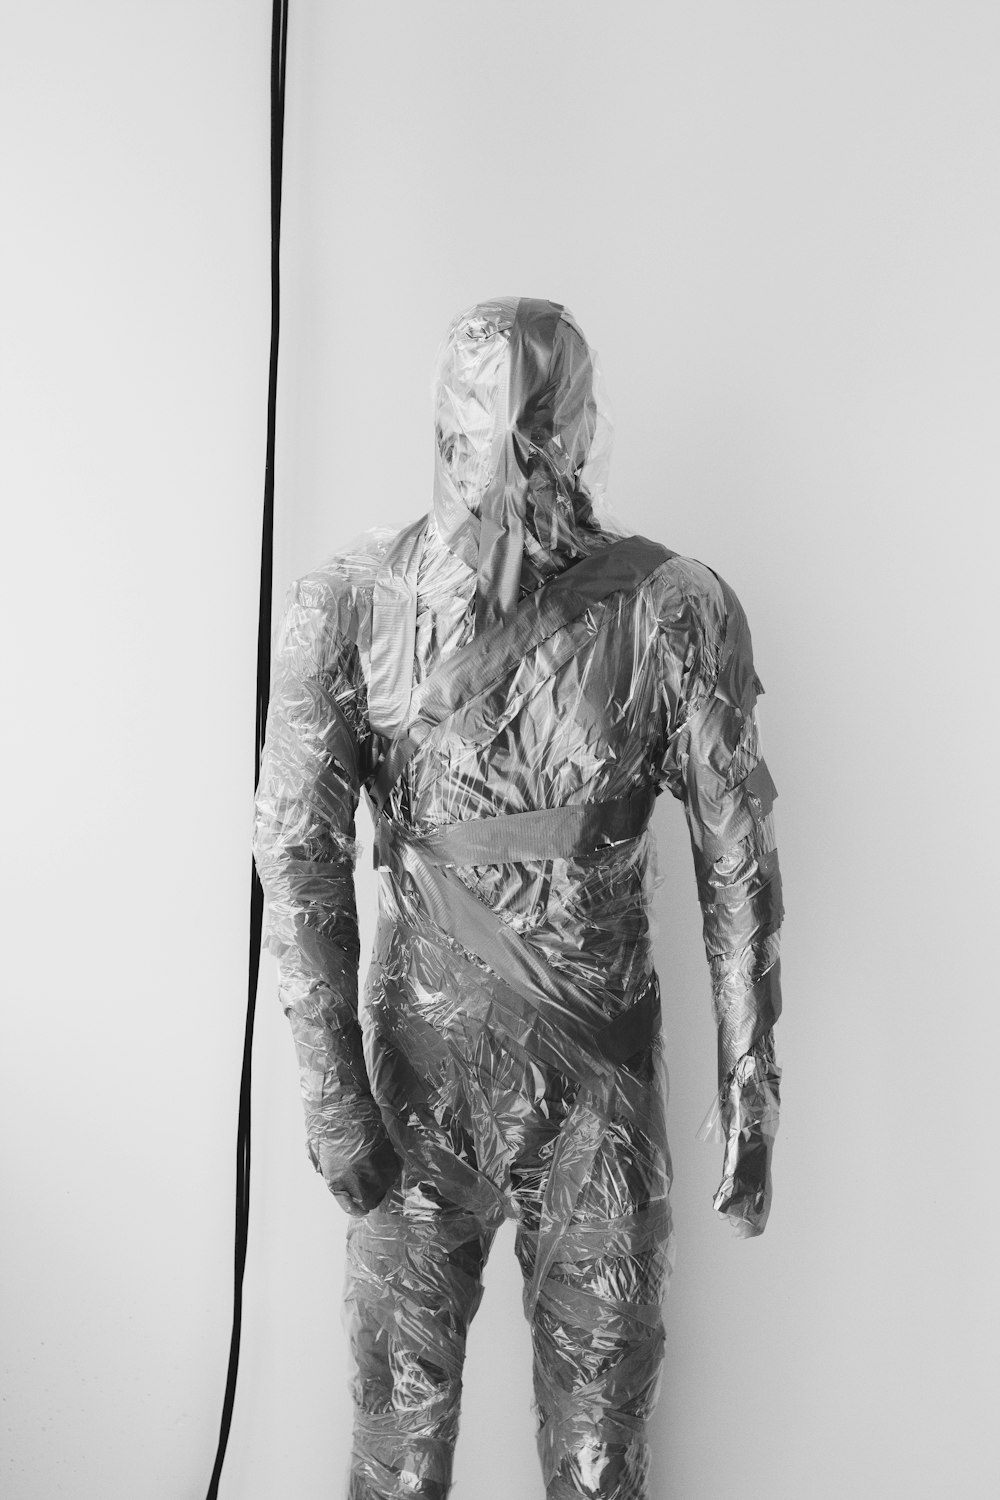 Un homme en costume en plastique debout devant un mur blanc